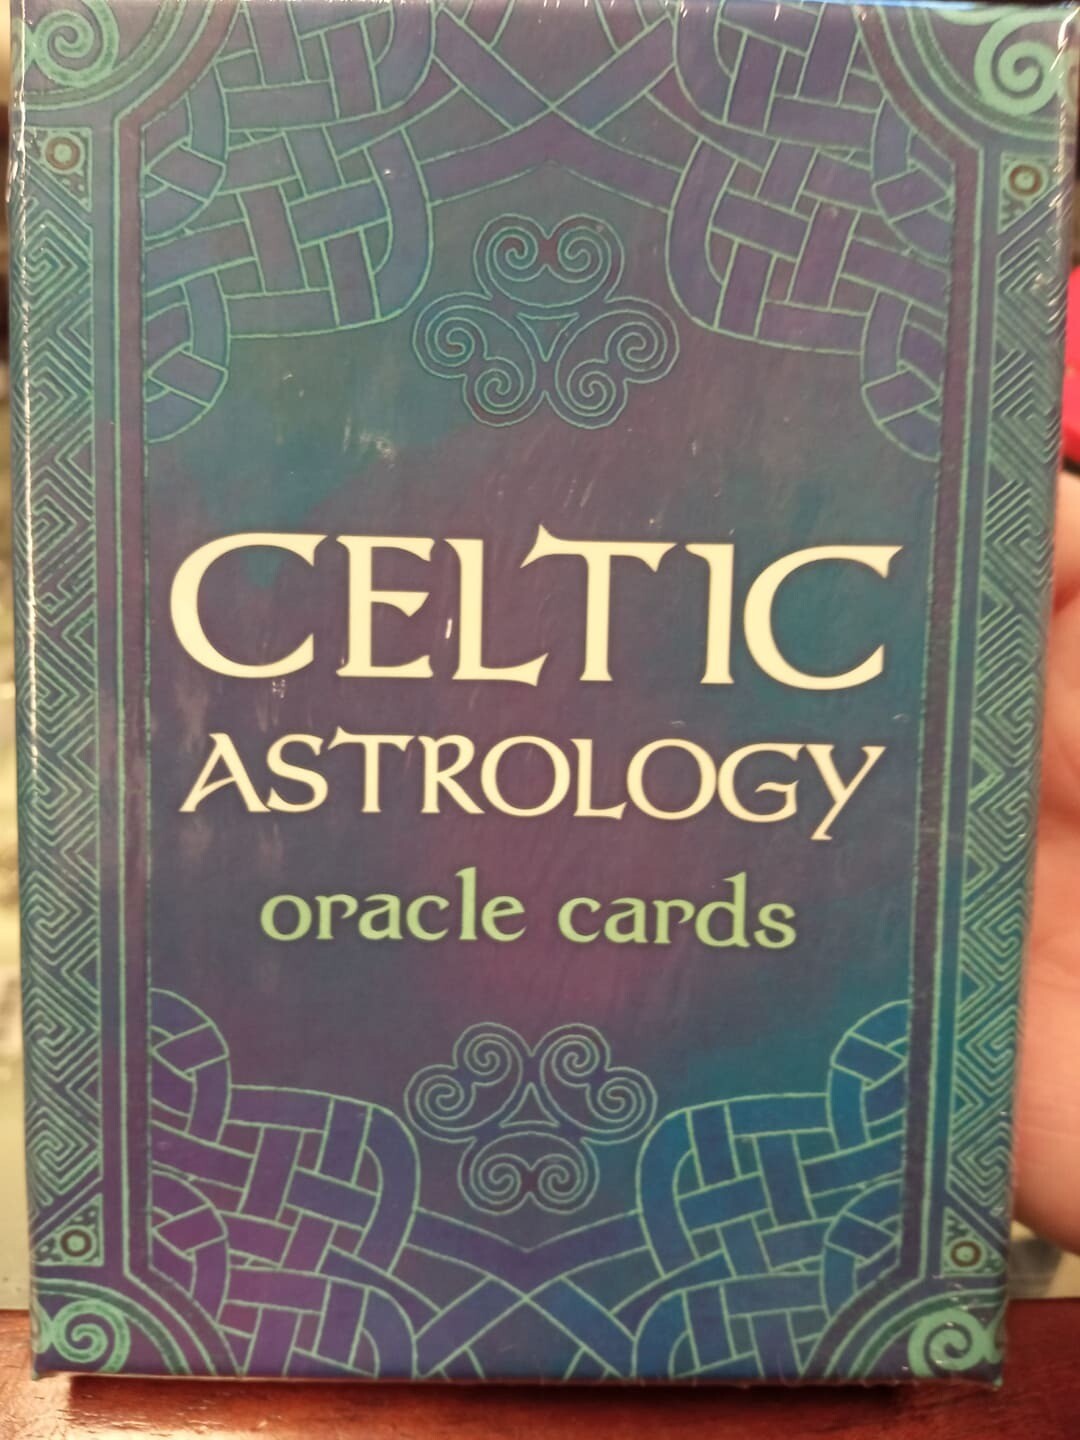 Celtic Astrology Cards